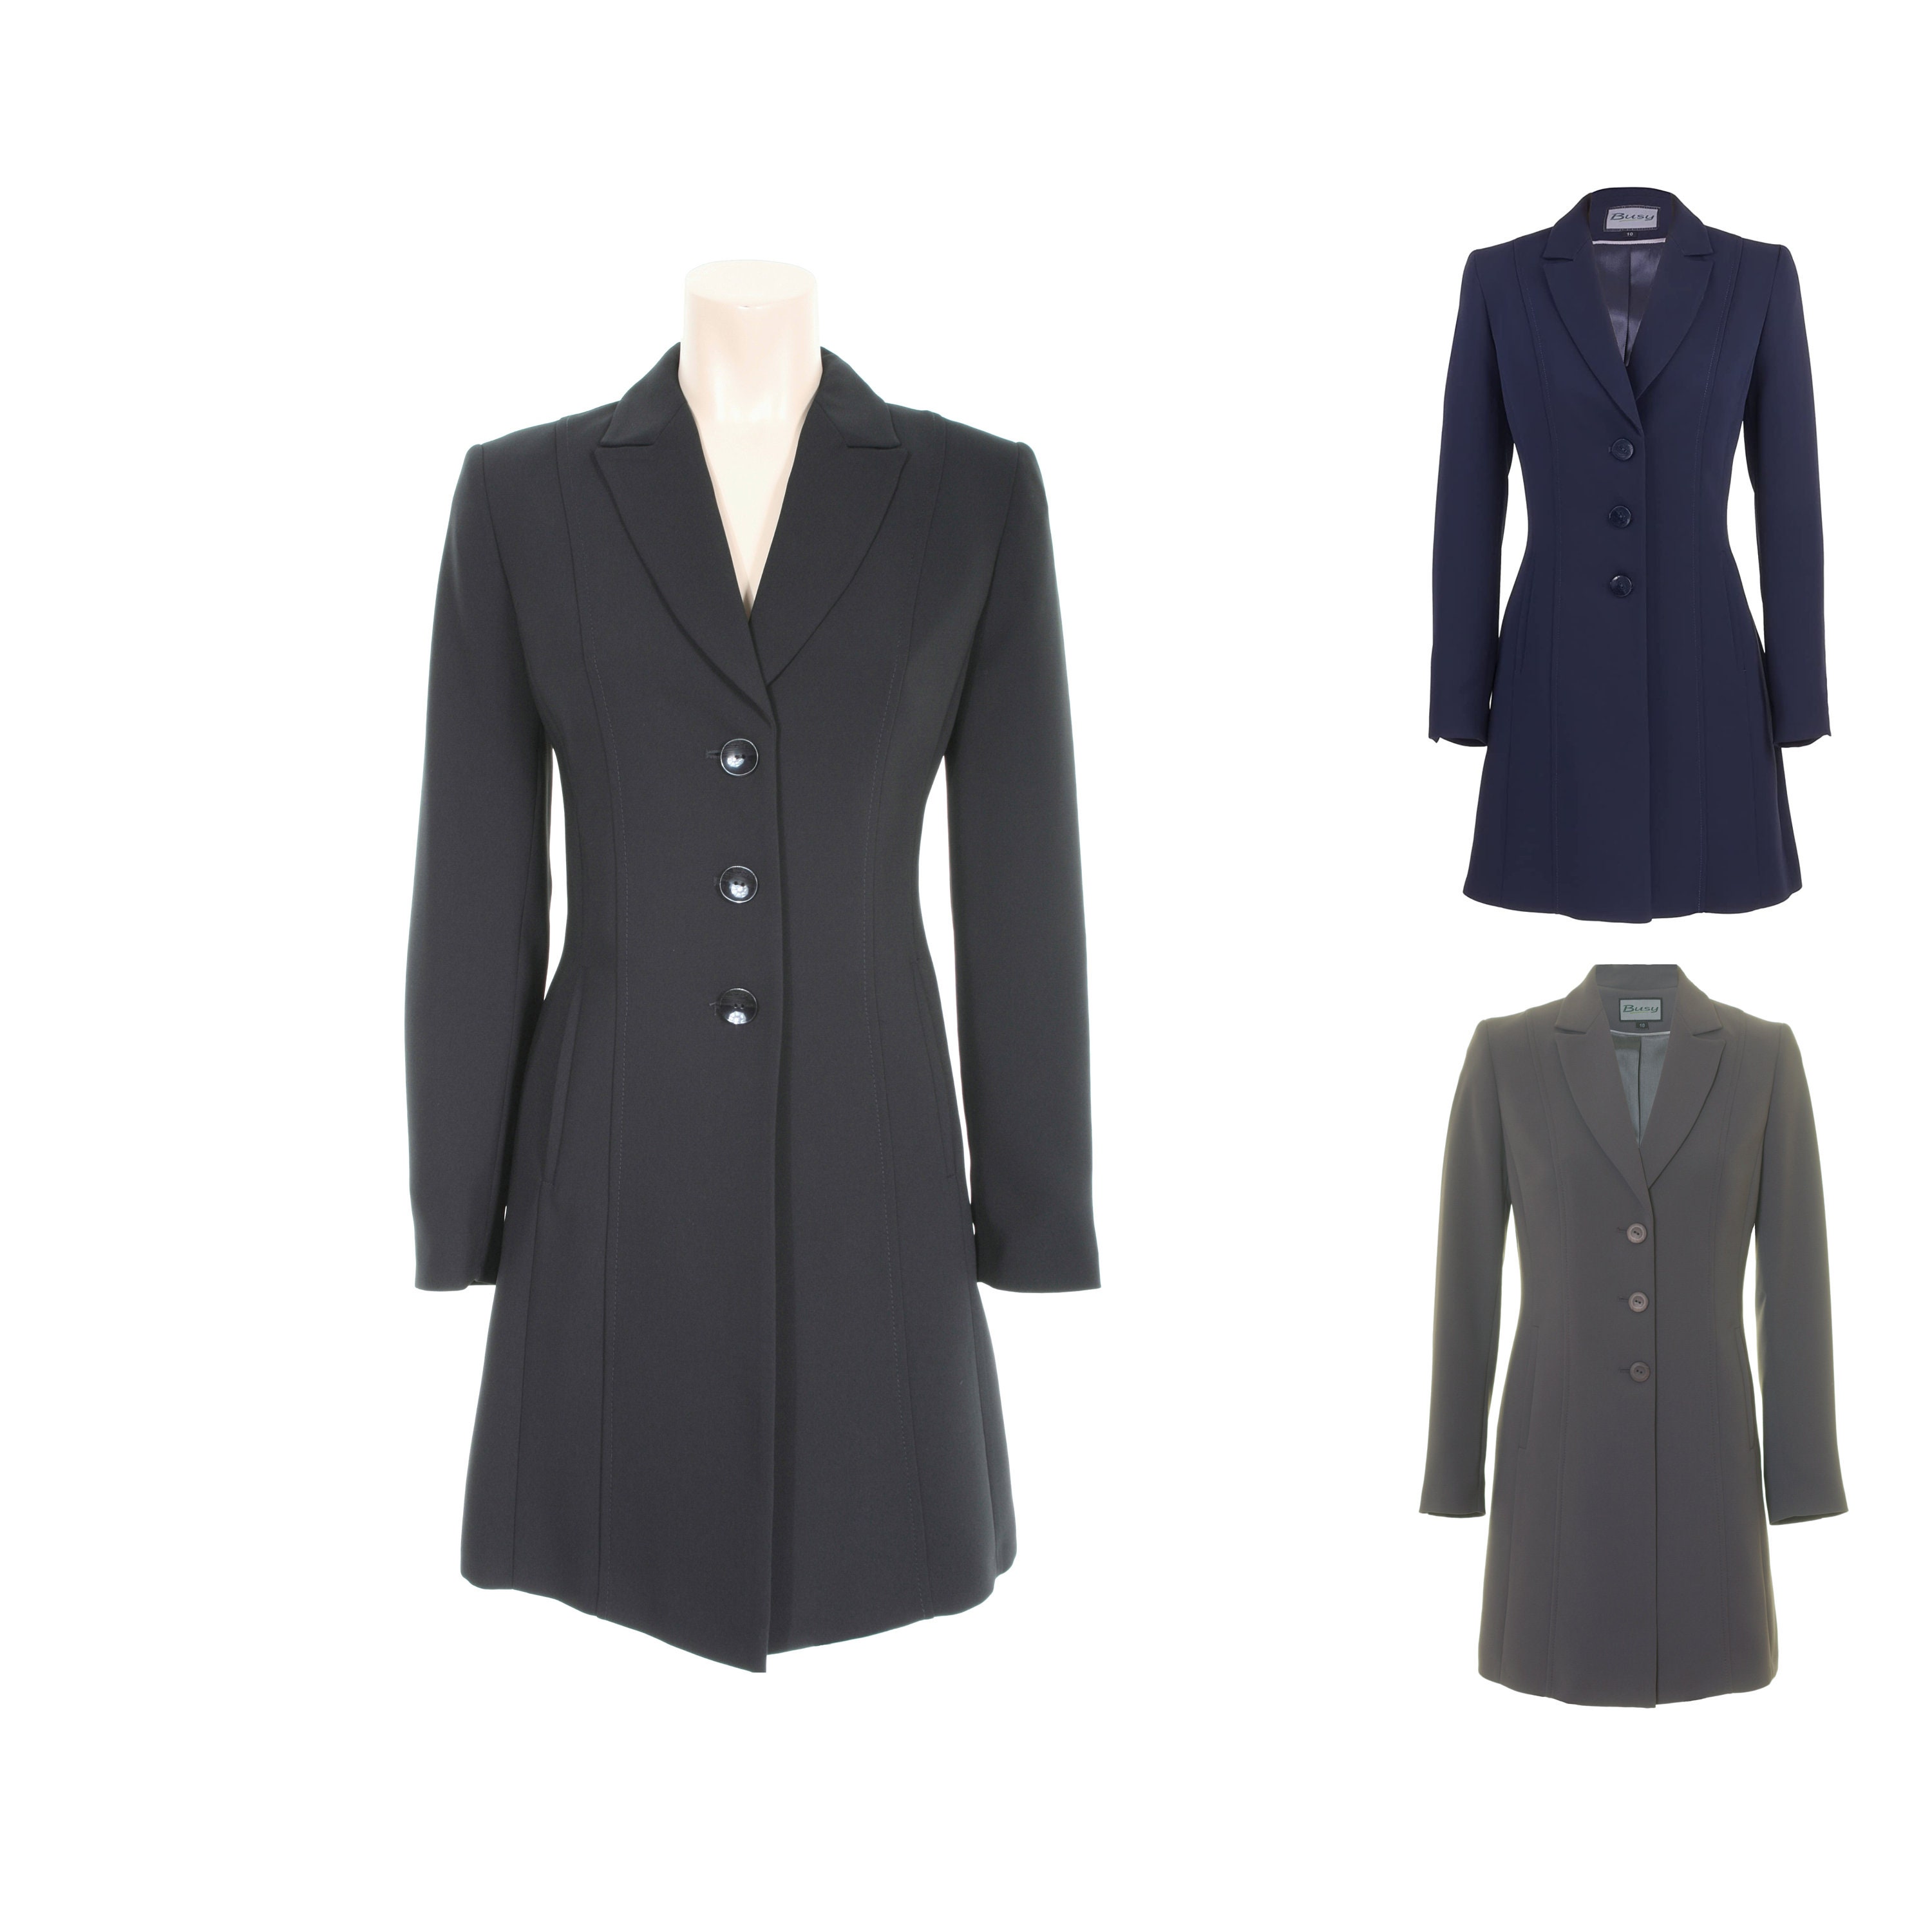 Busy Women's Long Jacket Blazer in Black, Navy or Grey 